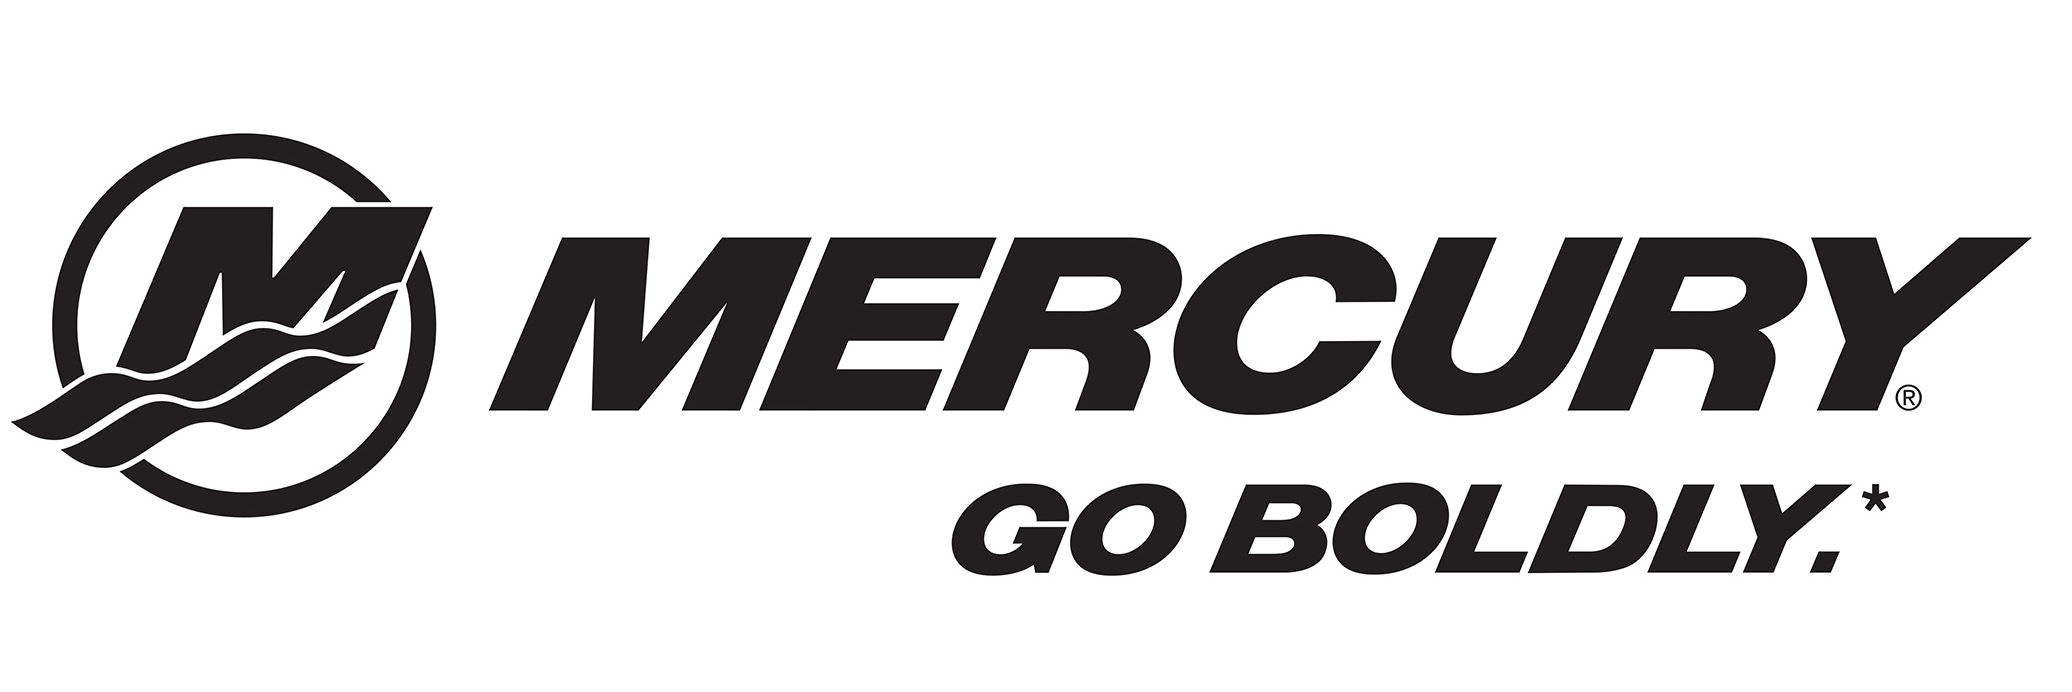 Mercury-Go-Boldly-English-Lockup-Flat_logo-e1489693434411.jpg